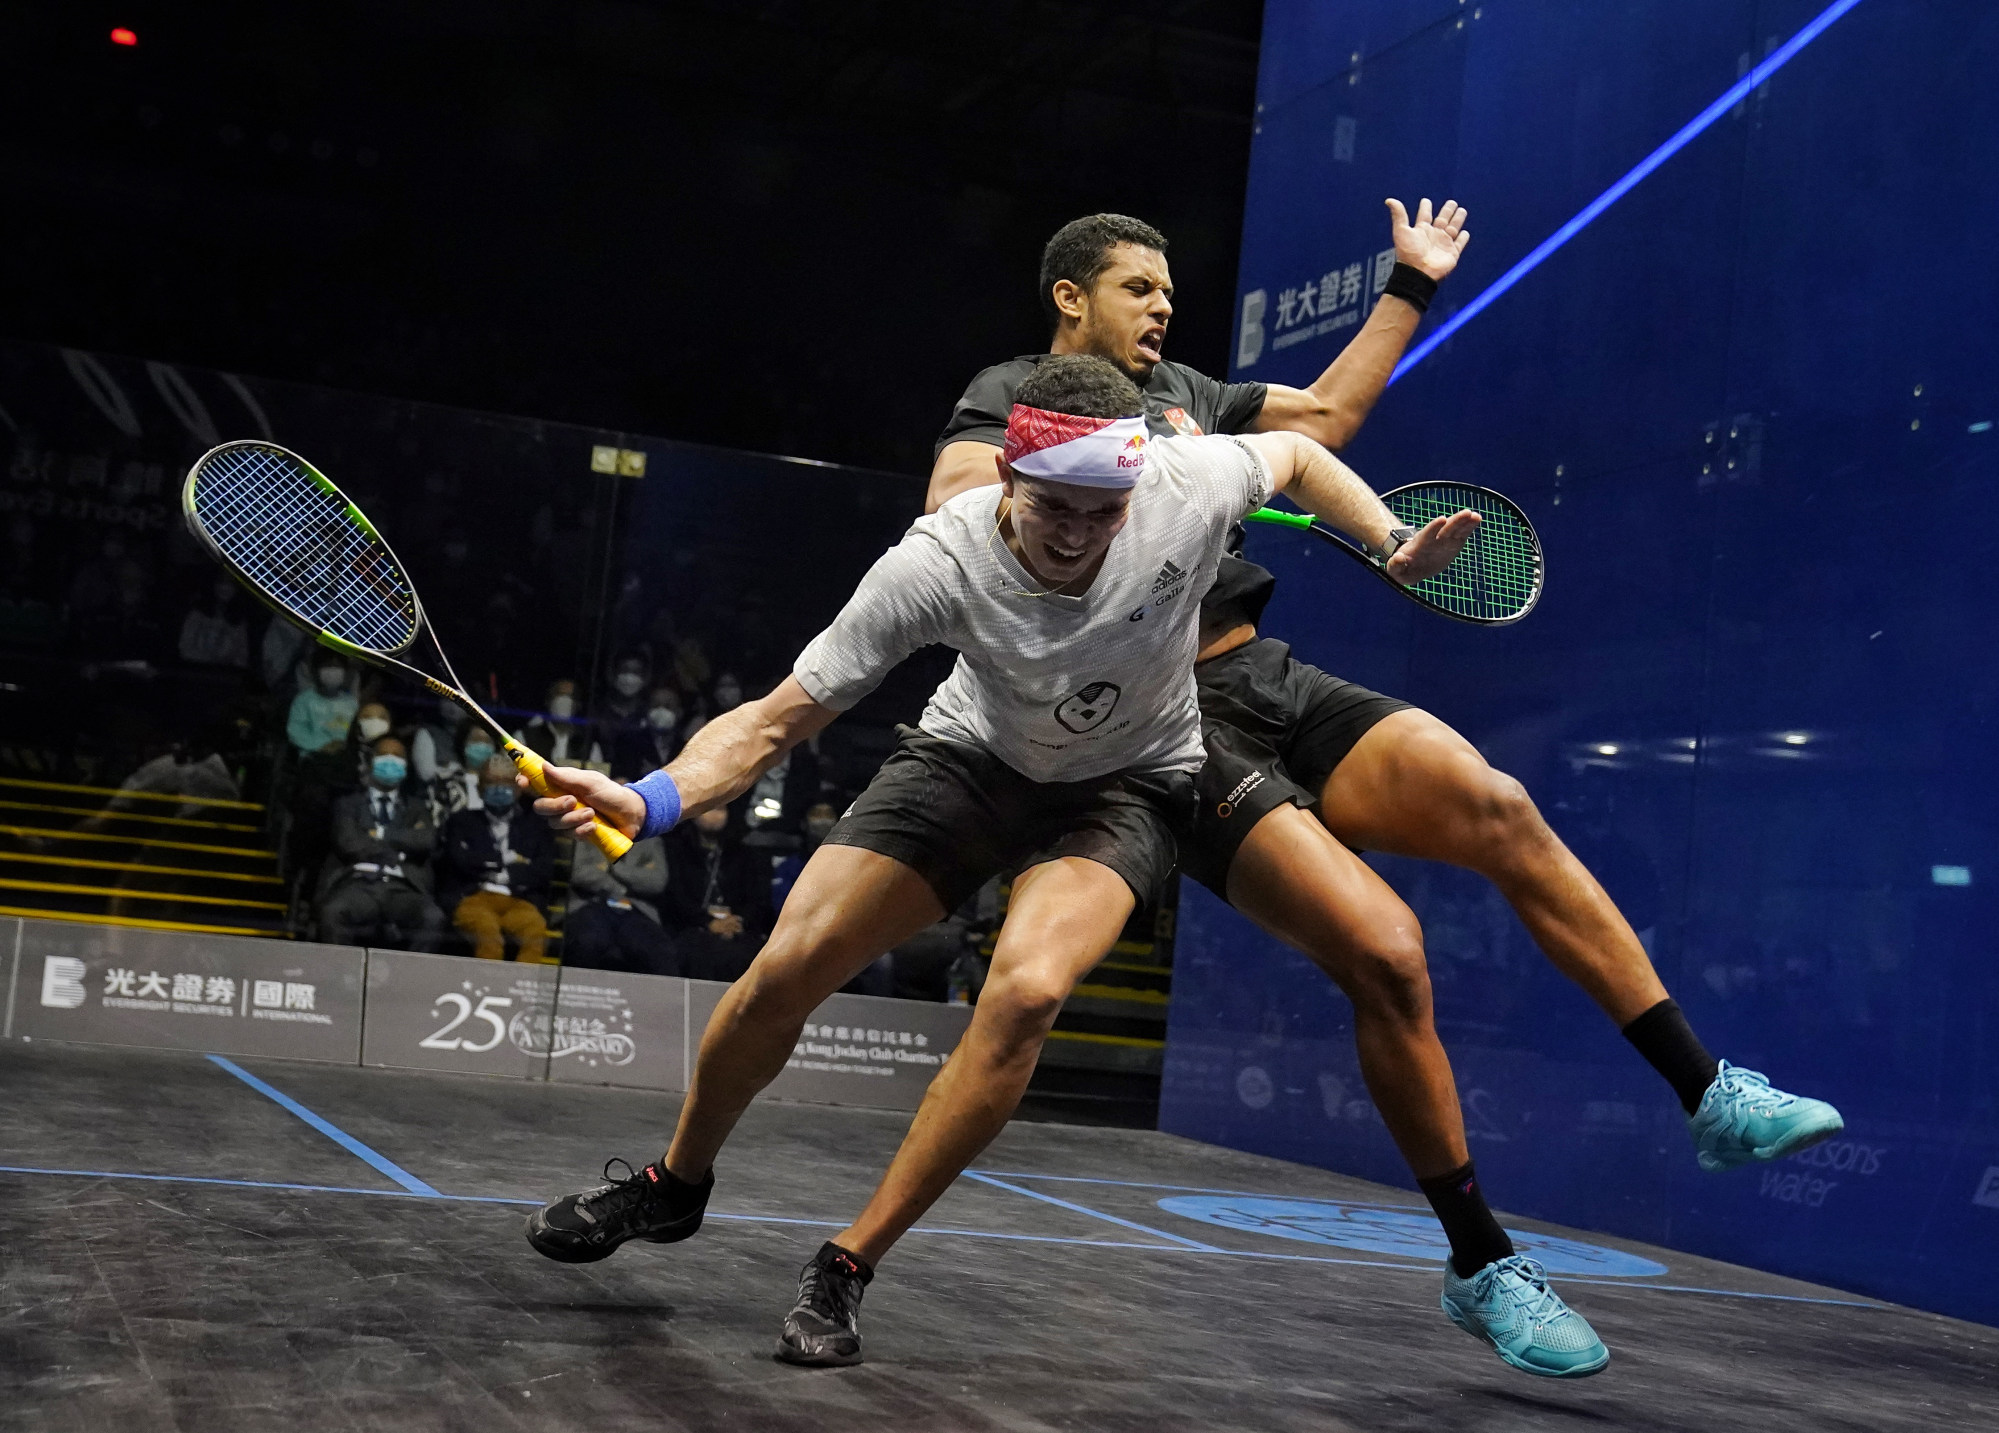 squash star asal using hong kong success as fuel following ban, targets repeat glory and improved discipline